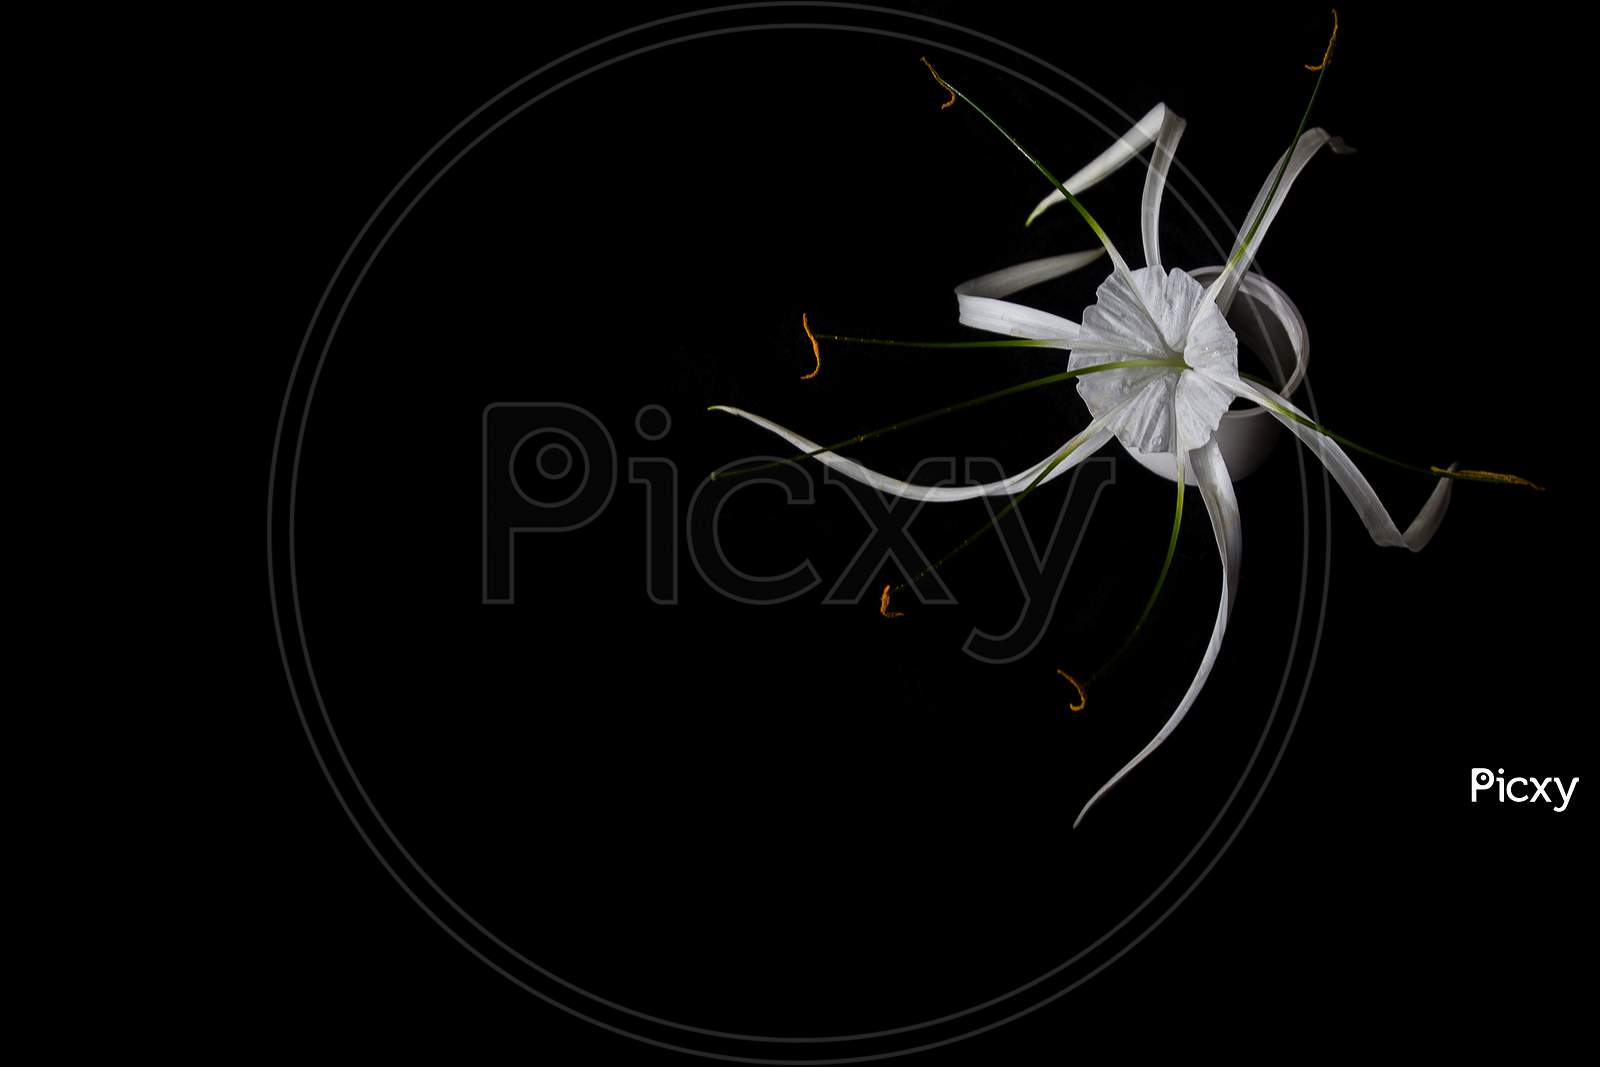 White Coloured Flower on Black Background